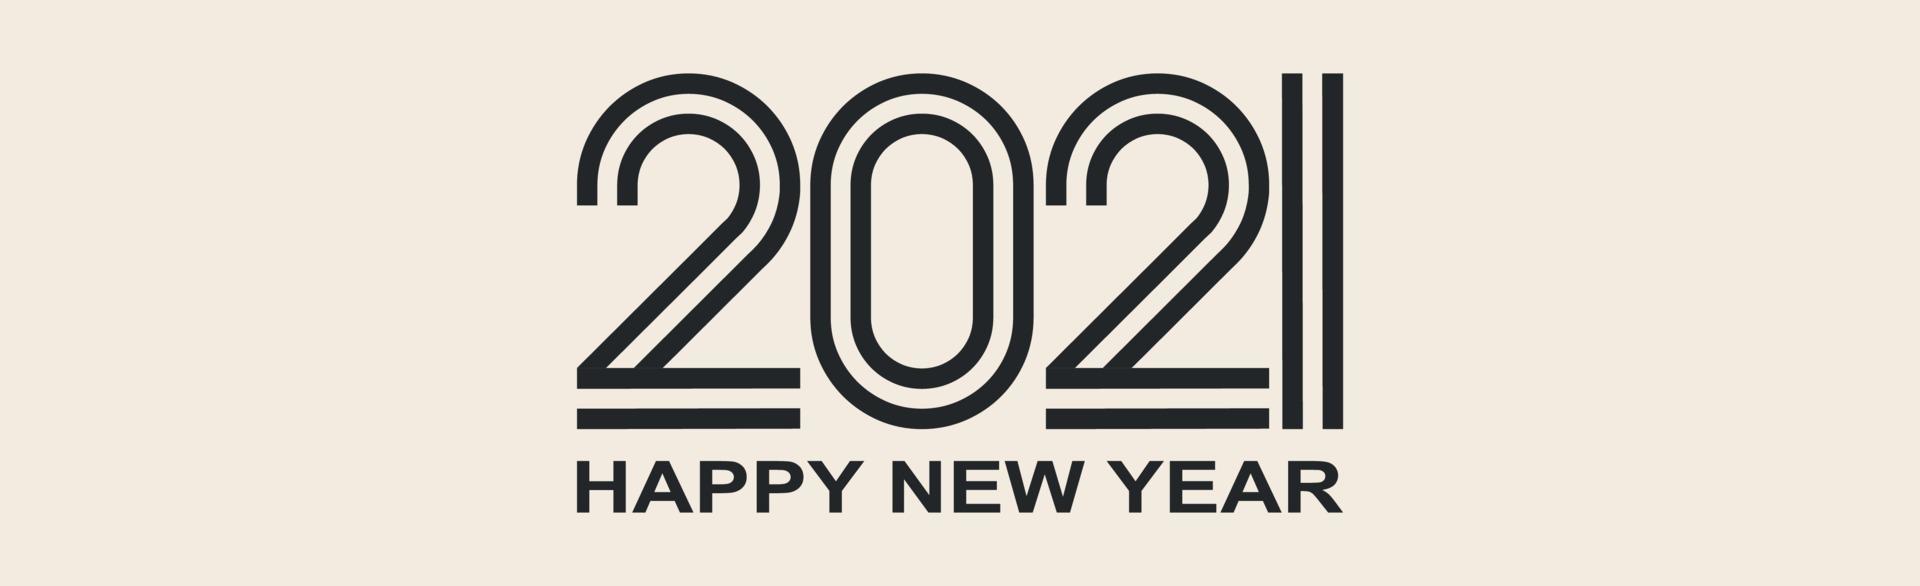 Zahlen 2021 wünschen neues Jahr auf hellem Hintergrund vektor